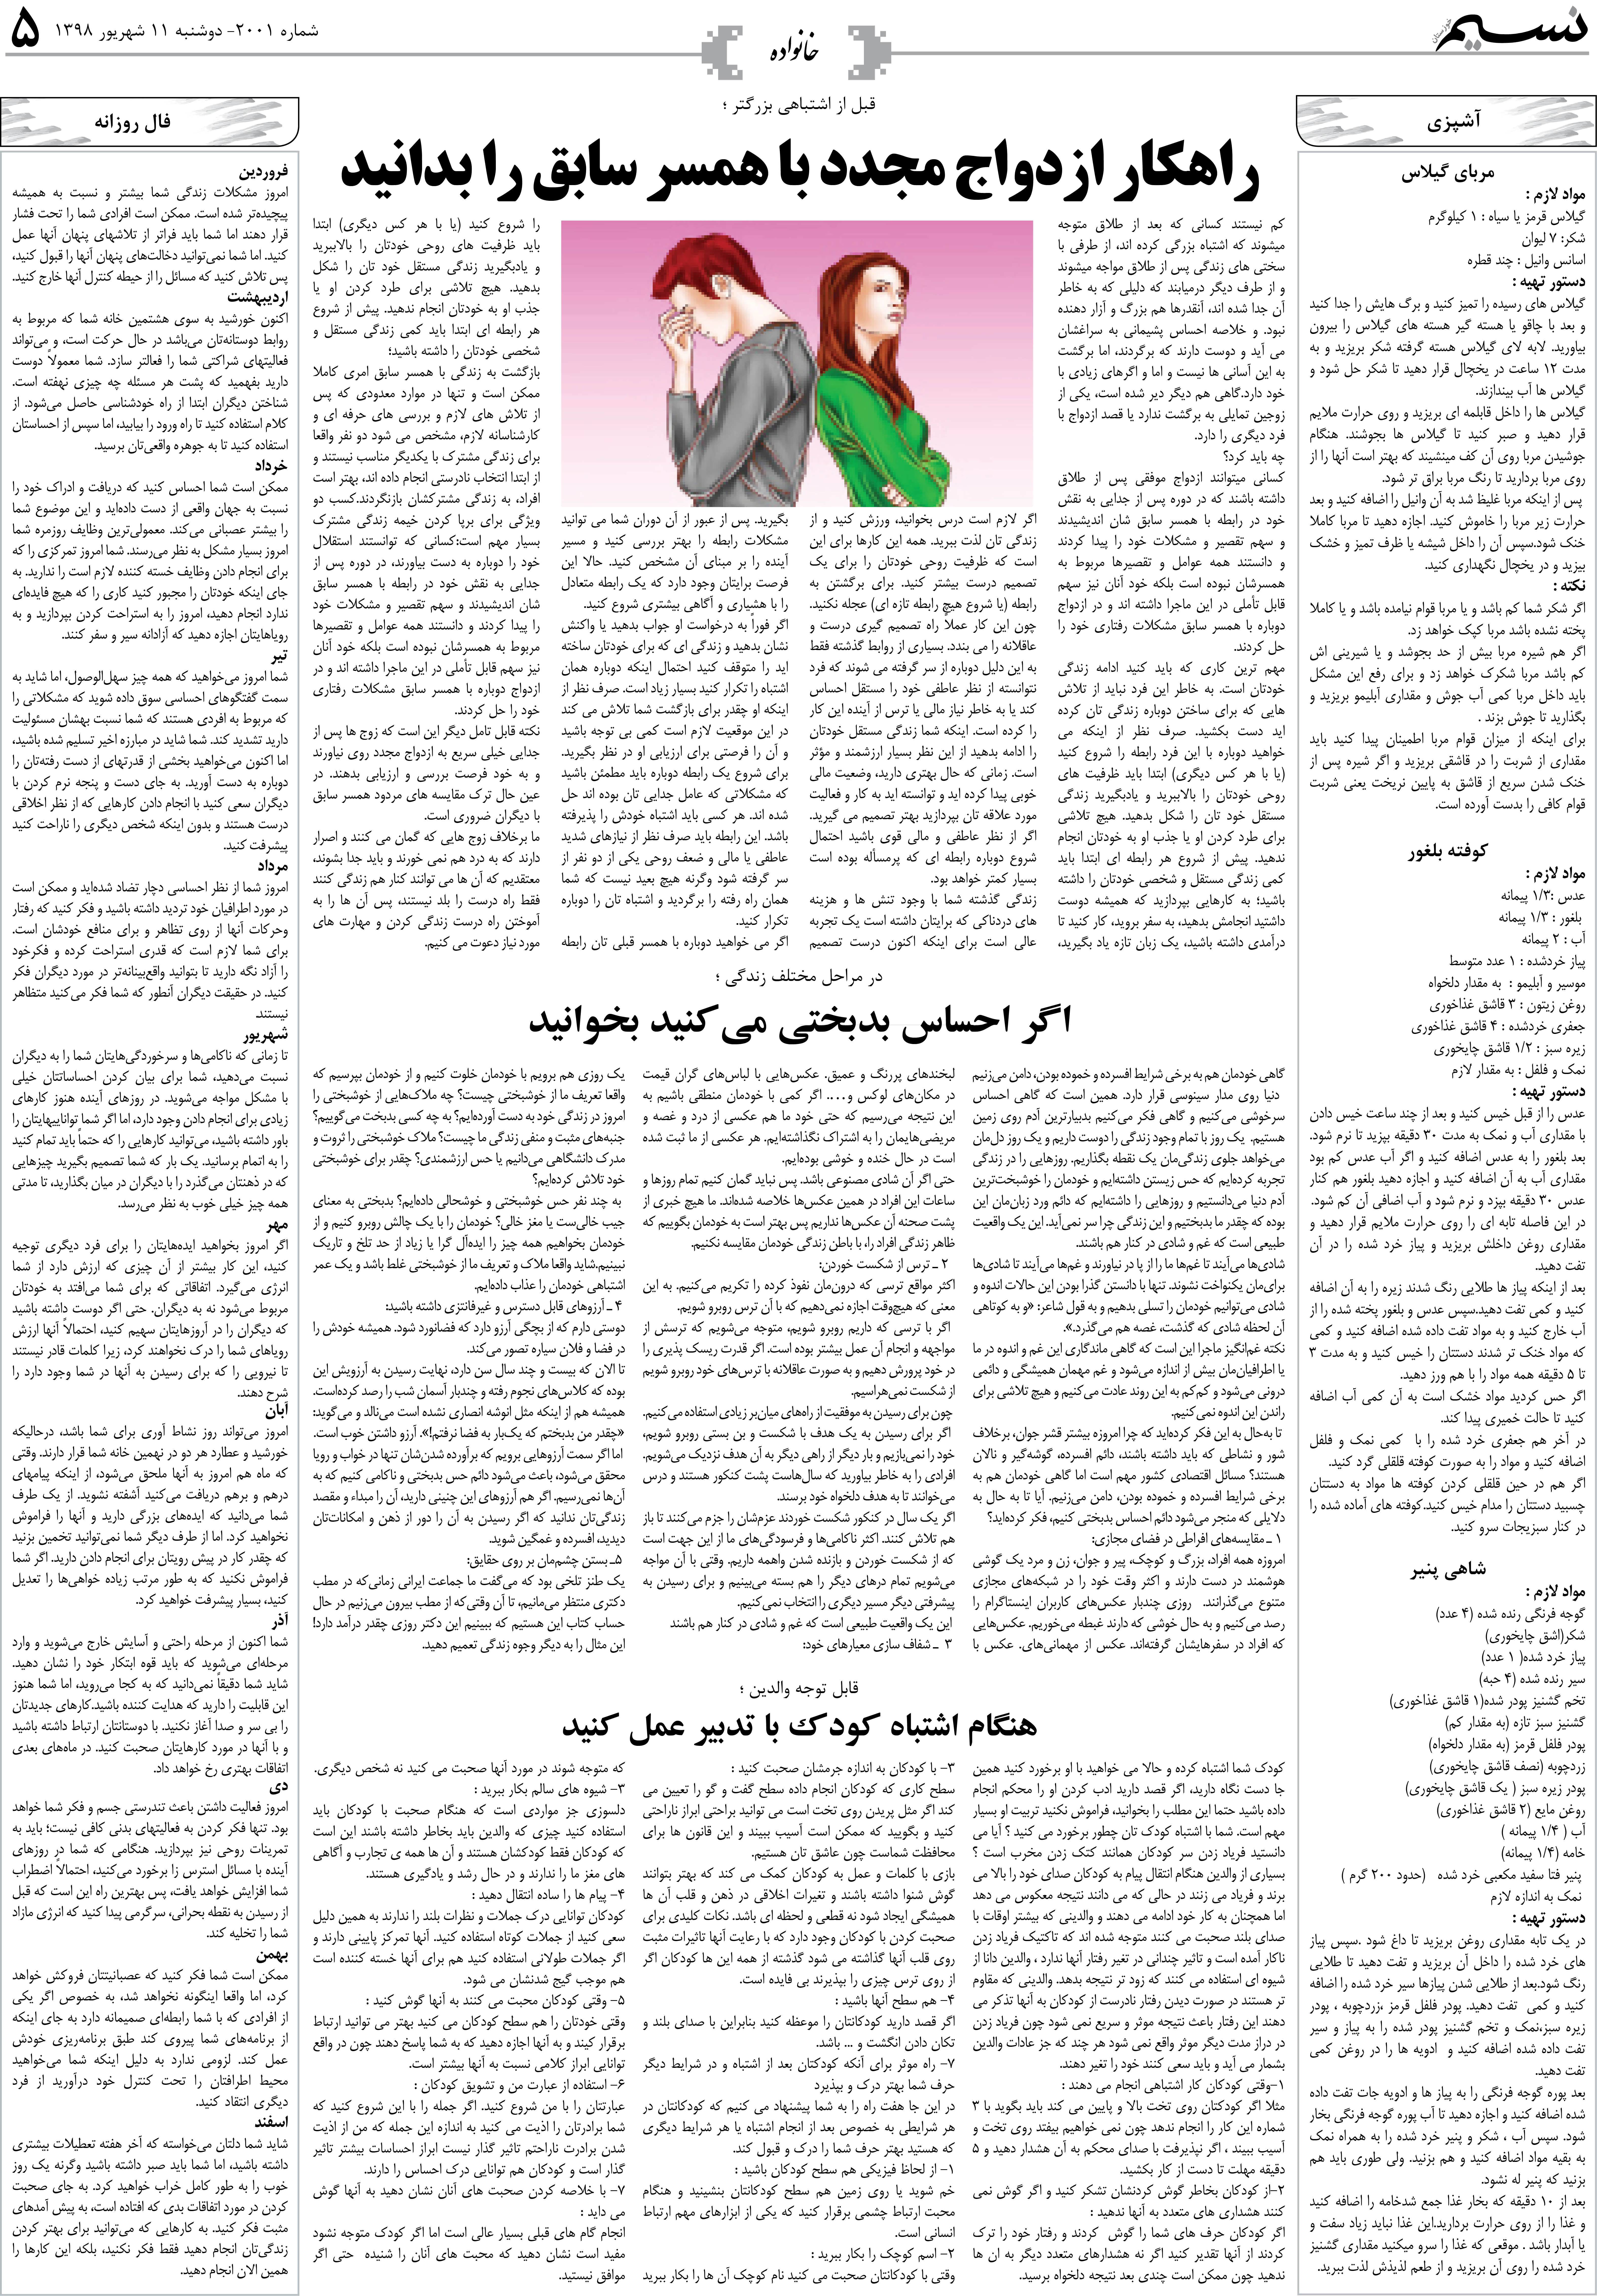 صفحه خانواده روزنامه نسیم شماره 2001